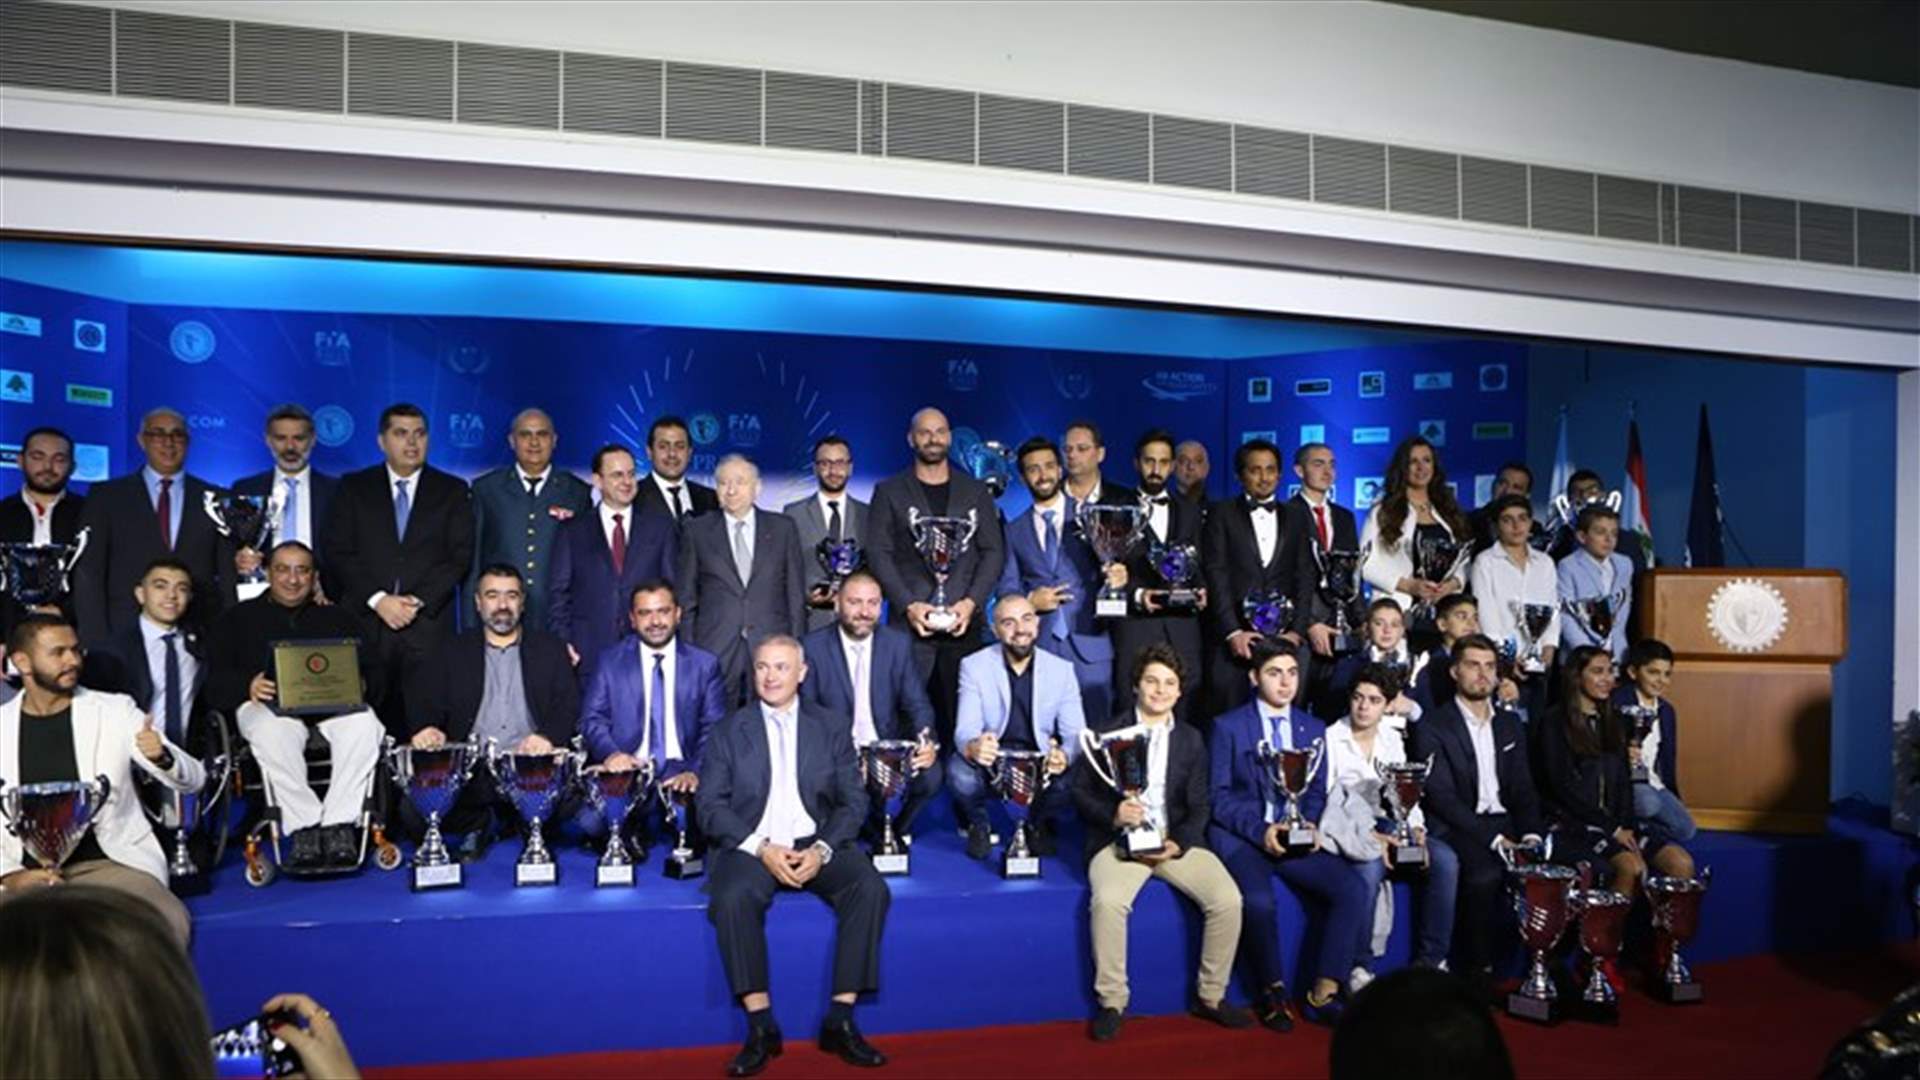 حفل توزيع جوائز مميز للرياضة الميكانيكية في الـATCL بحضور رئيس الإتحاد الدولي جان تود